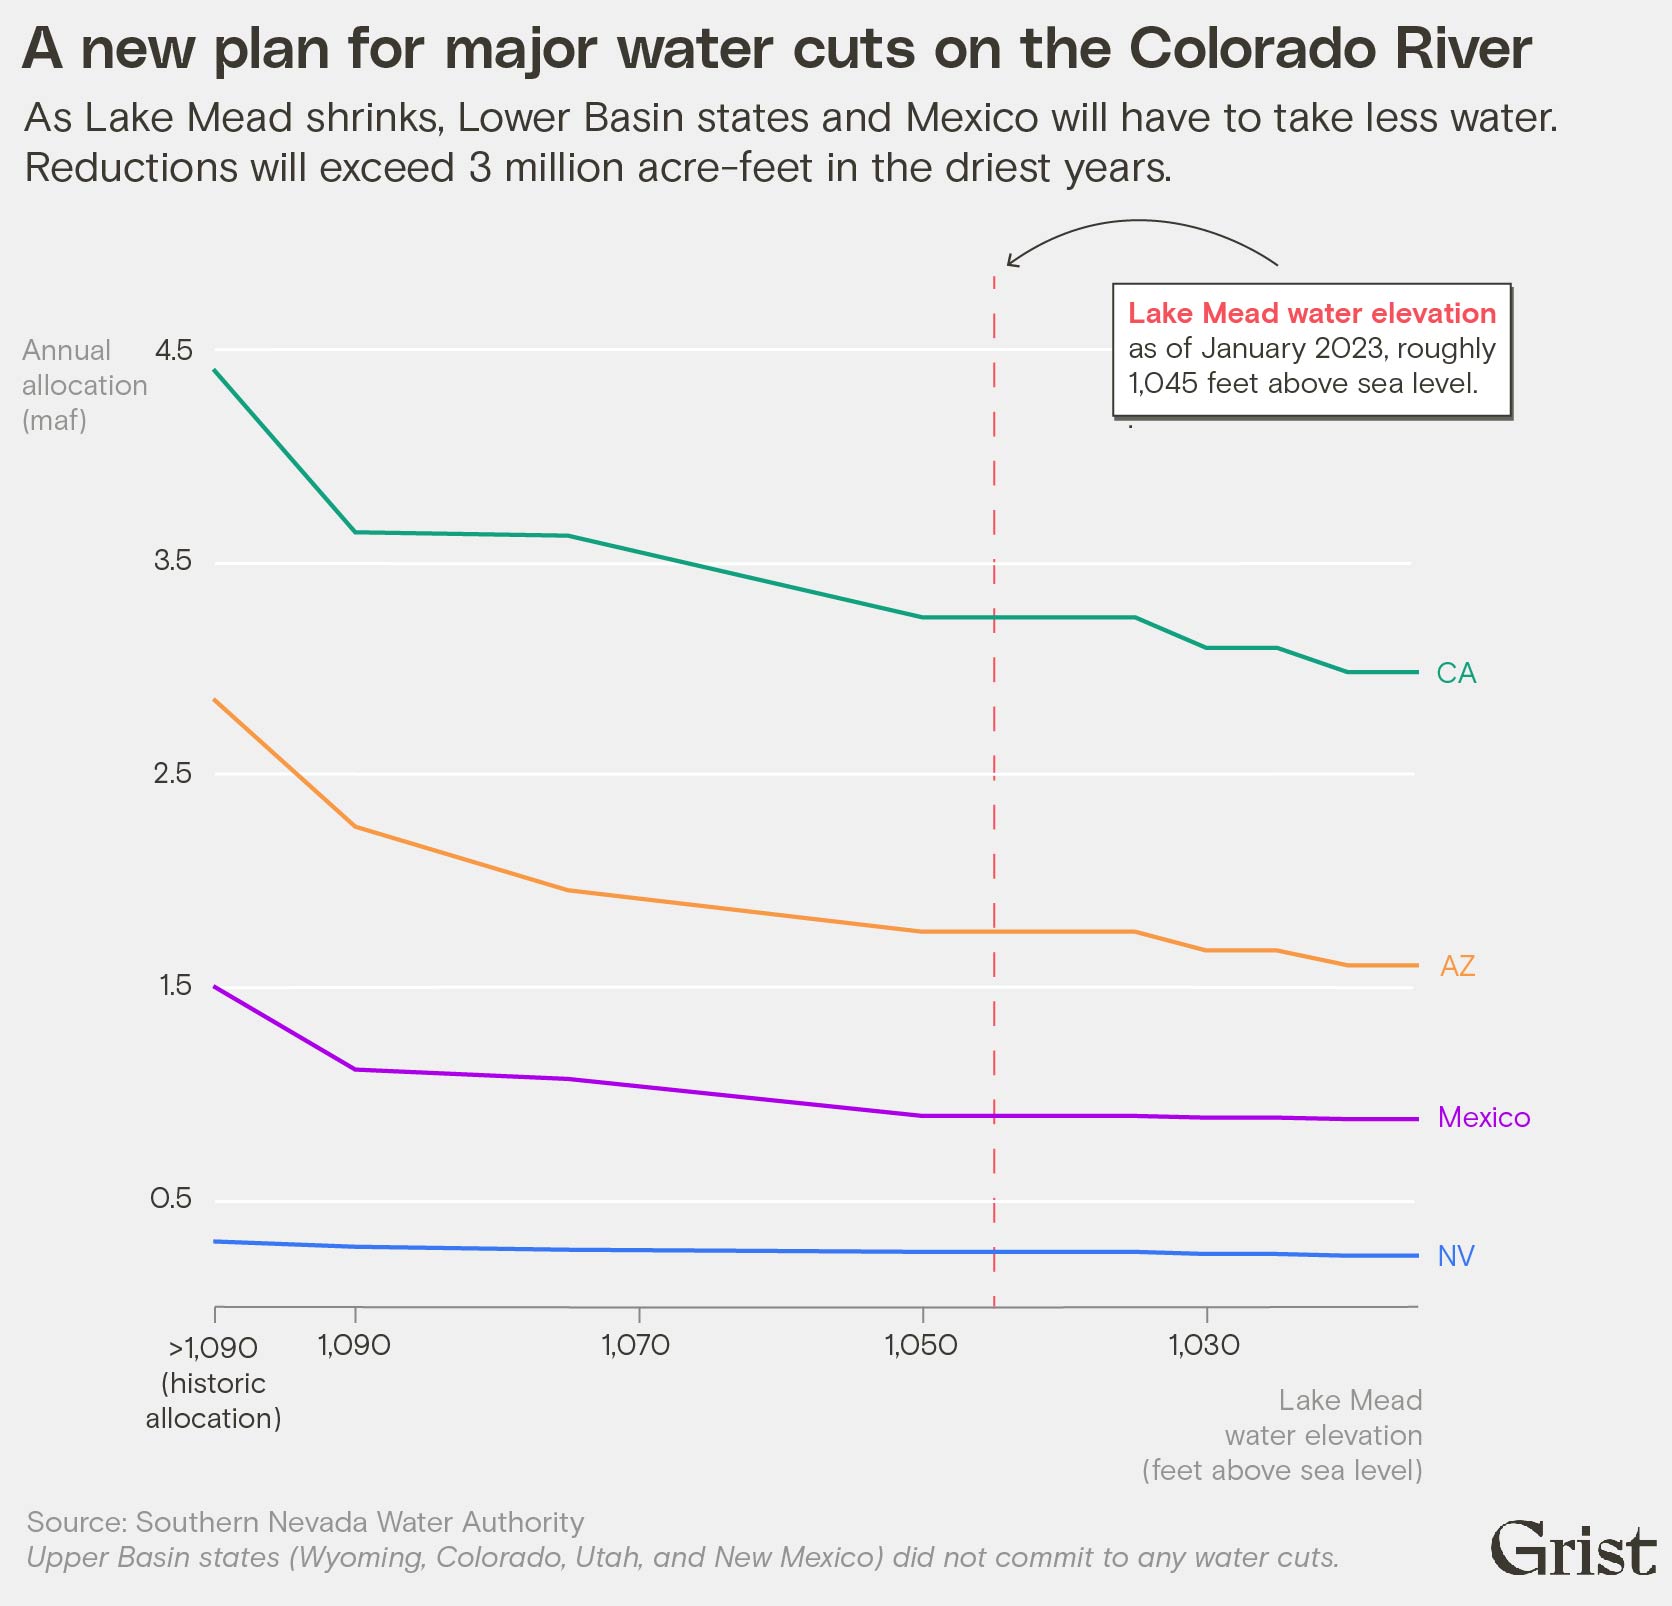 Le graphique multiligne montre le plan proposé pour les coupures d'eau entre certains États et le Mexique dans le bassin du fleuve Colorado.